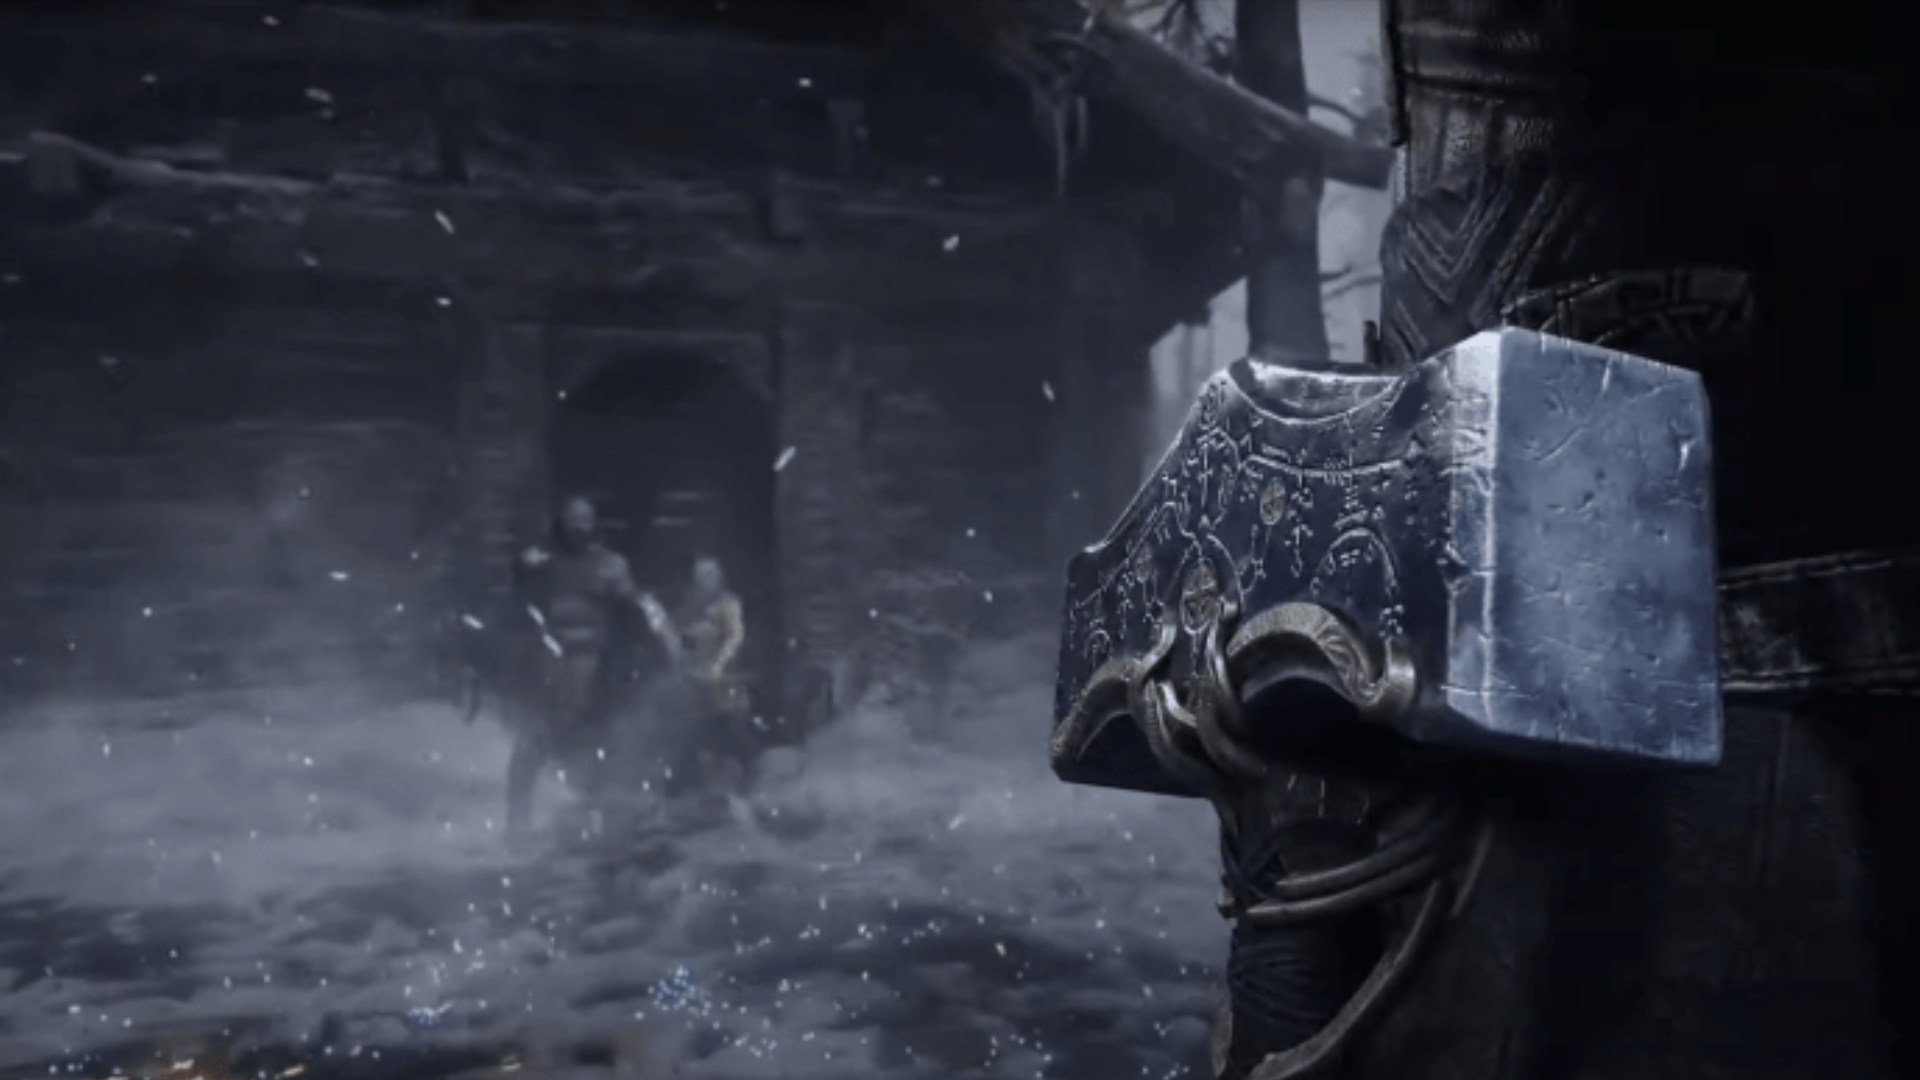 اولین تصویر از ثور در بازی God of War: Ragnarok منتشر شد